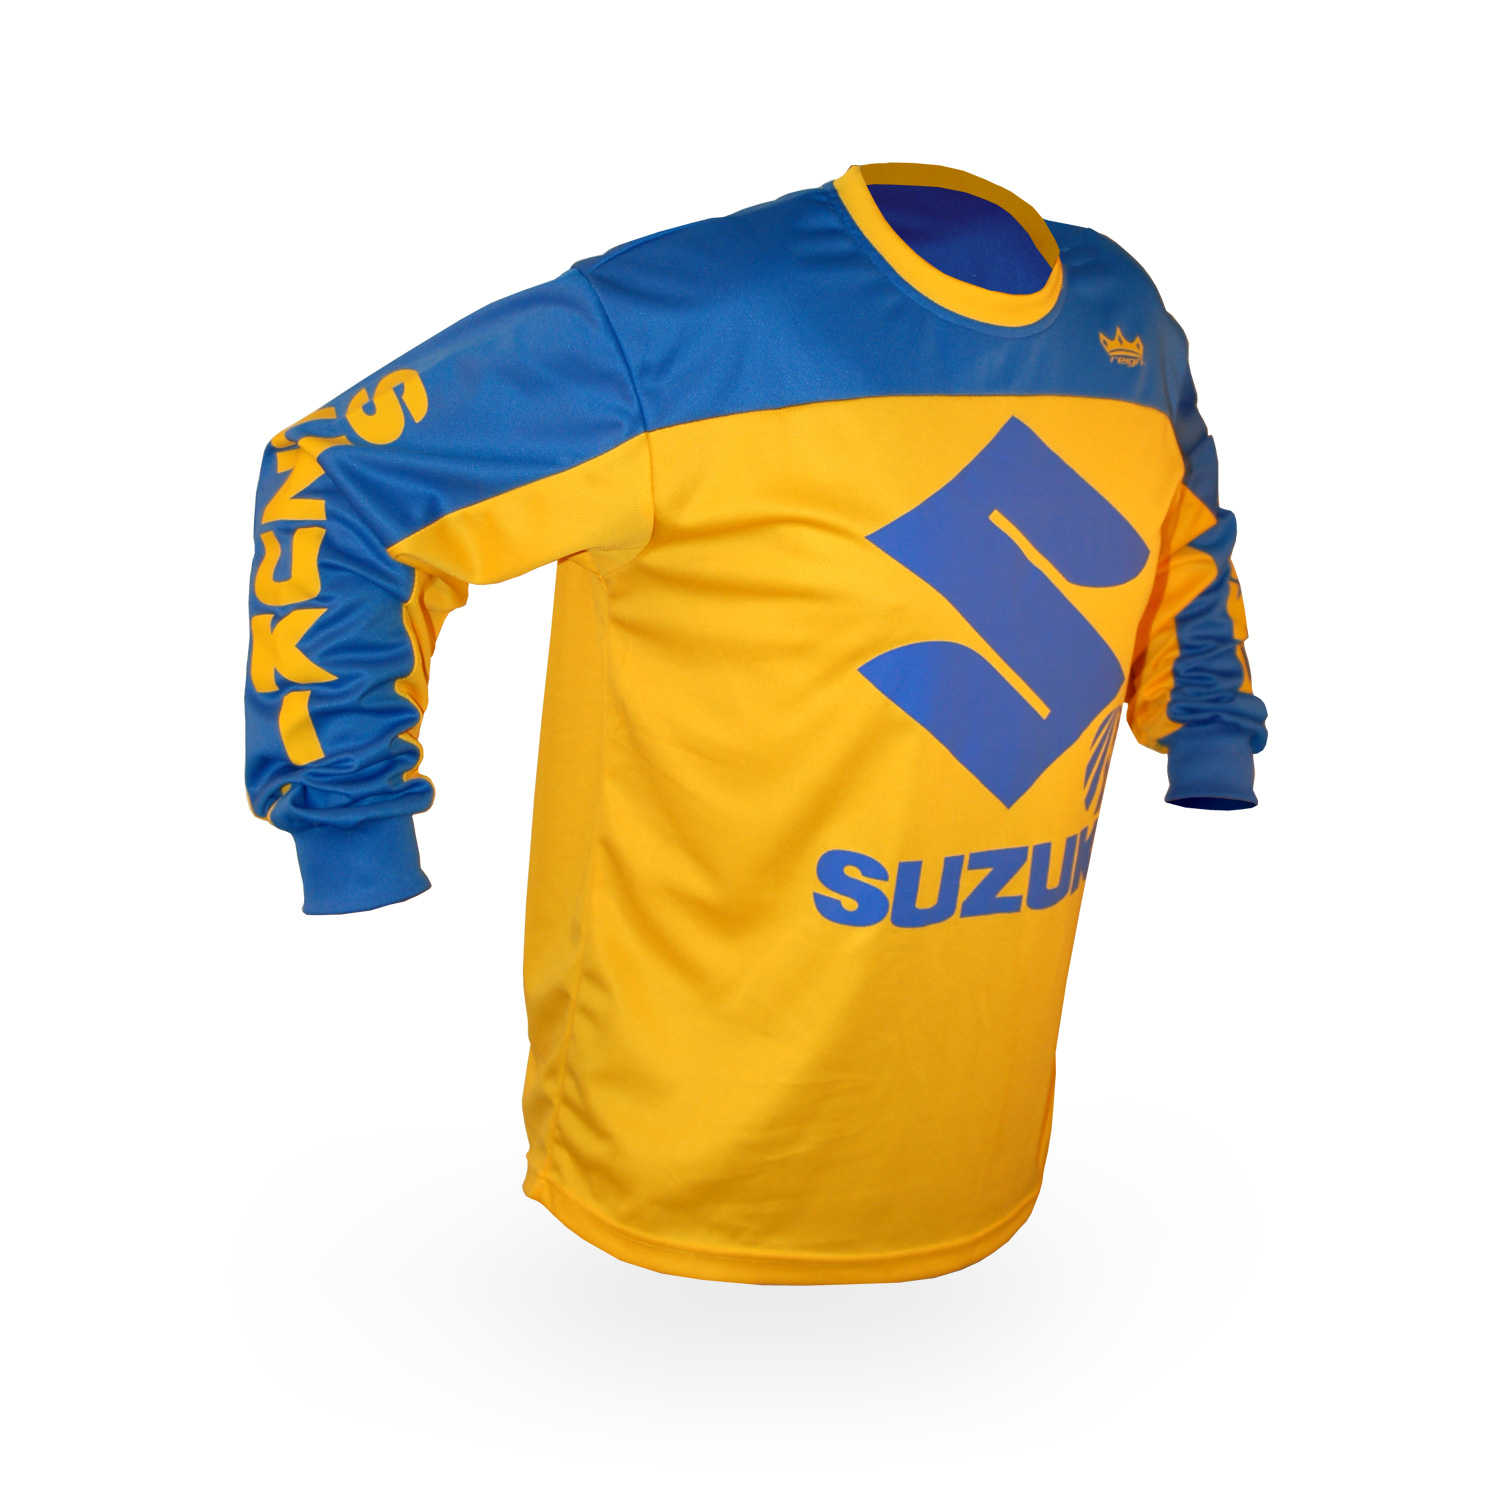 Suzuki Jersey — Reign VMX